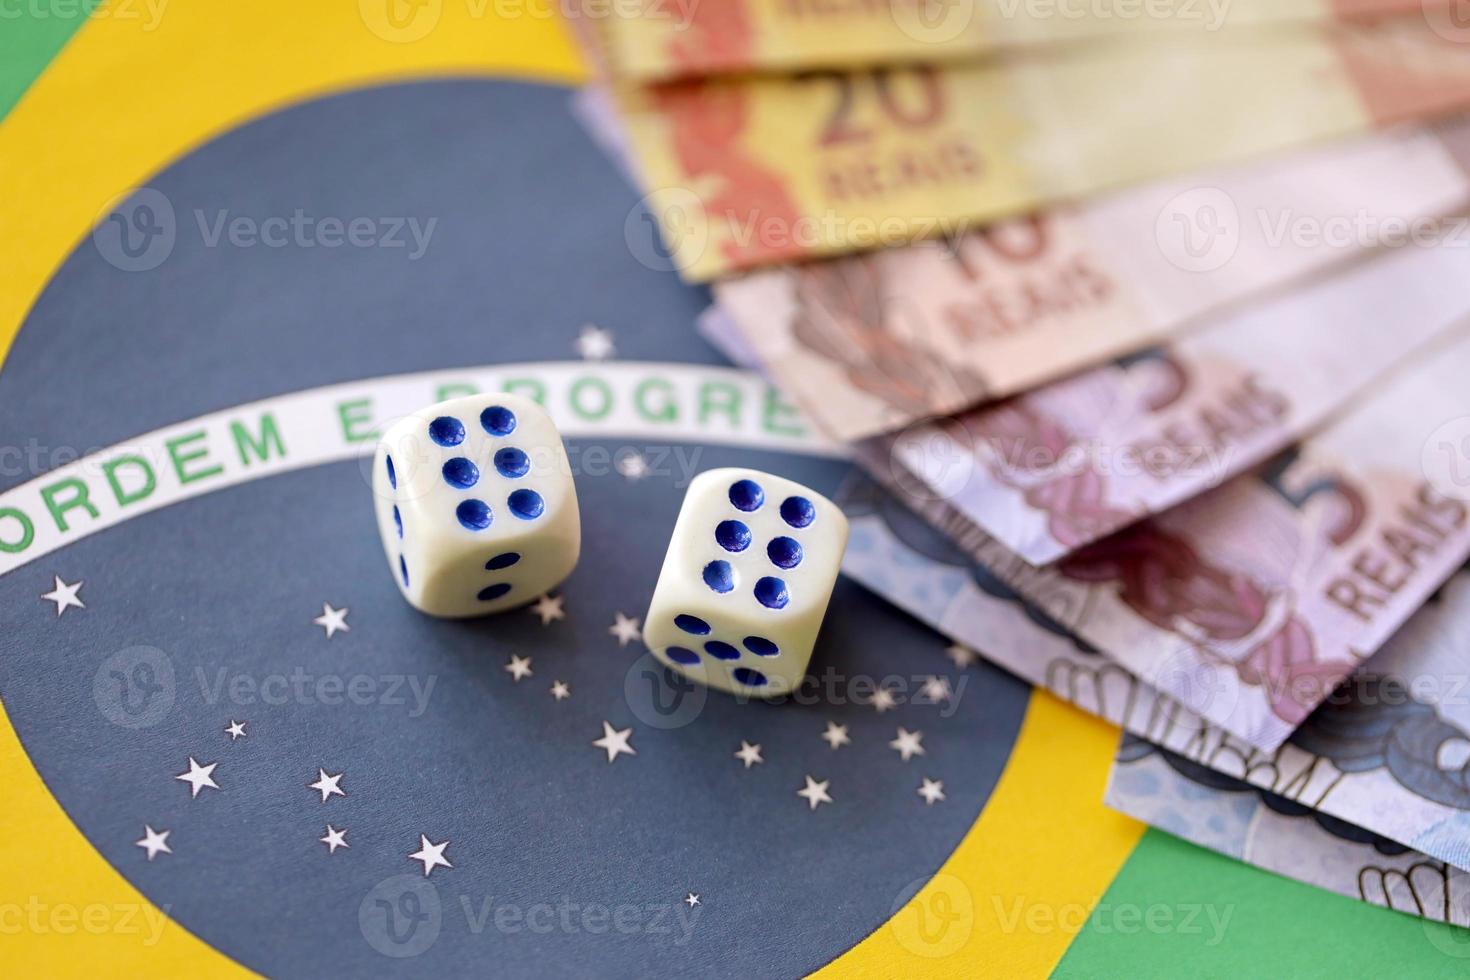 cubes de dés avec des billets d'argent brésiliens sur le drapeau de la république du brésil. concept de chance et de jeu au brésil photo